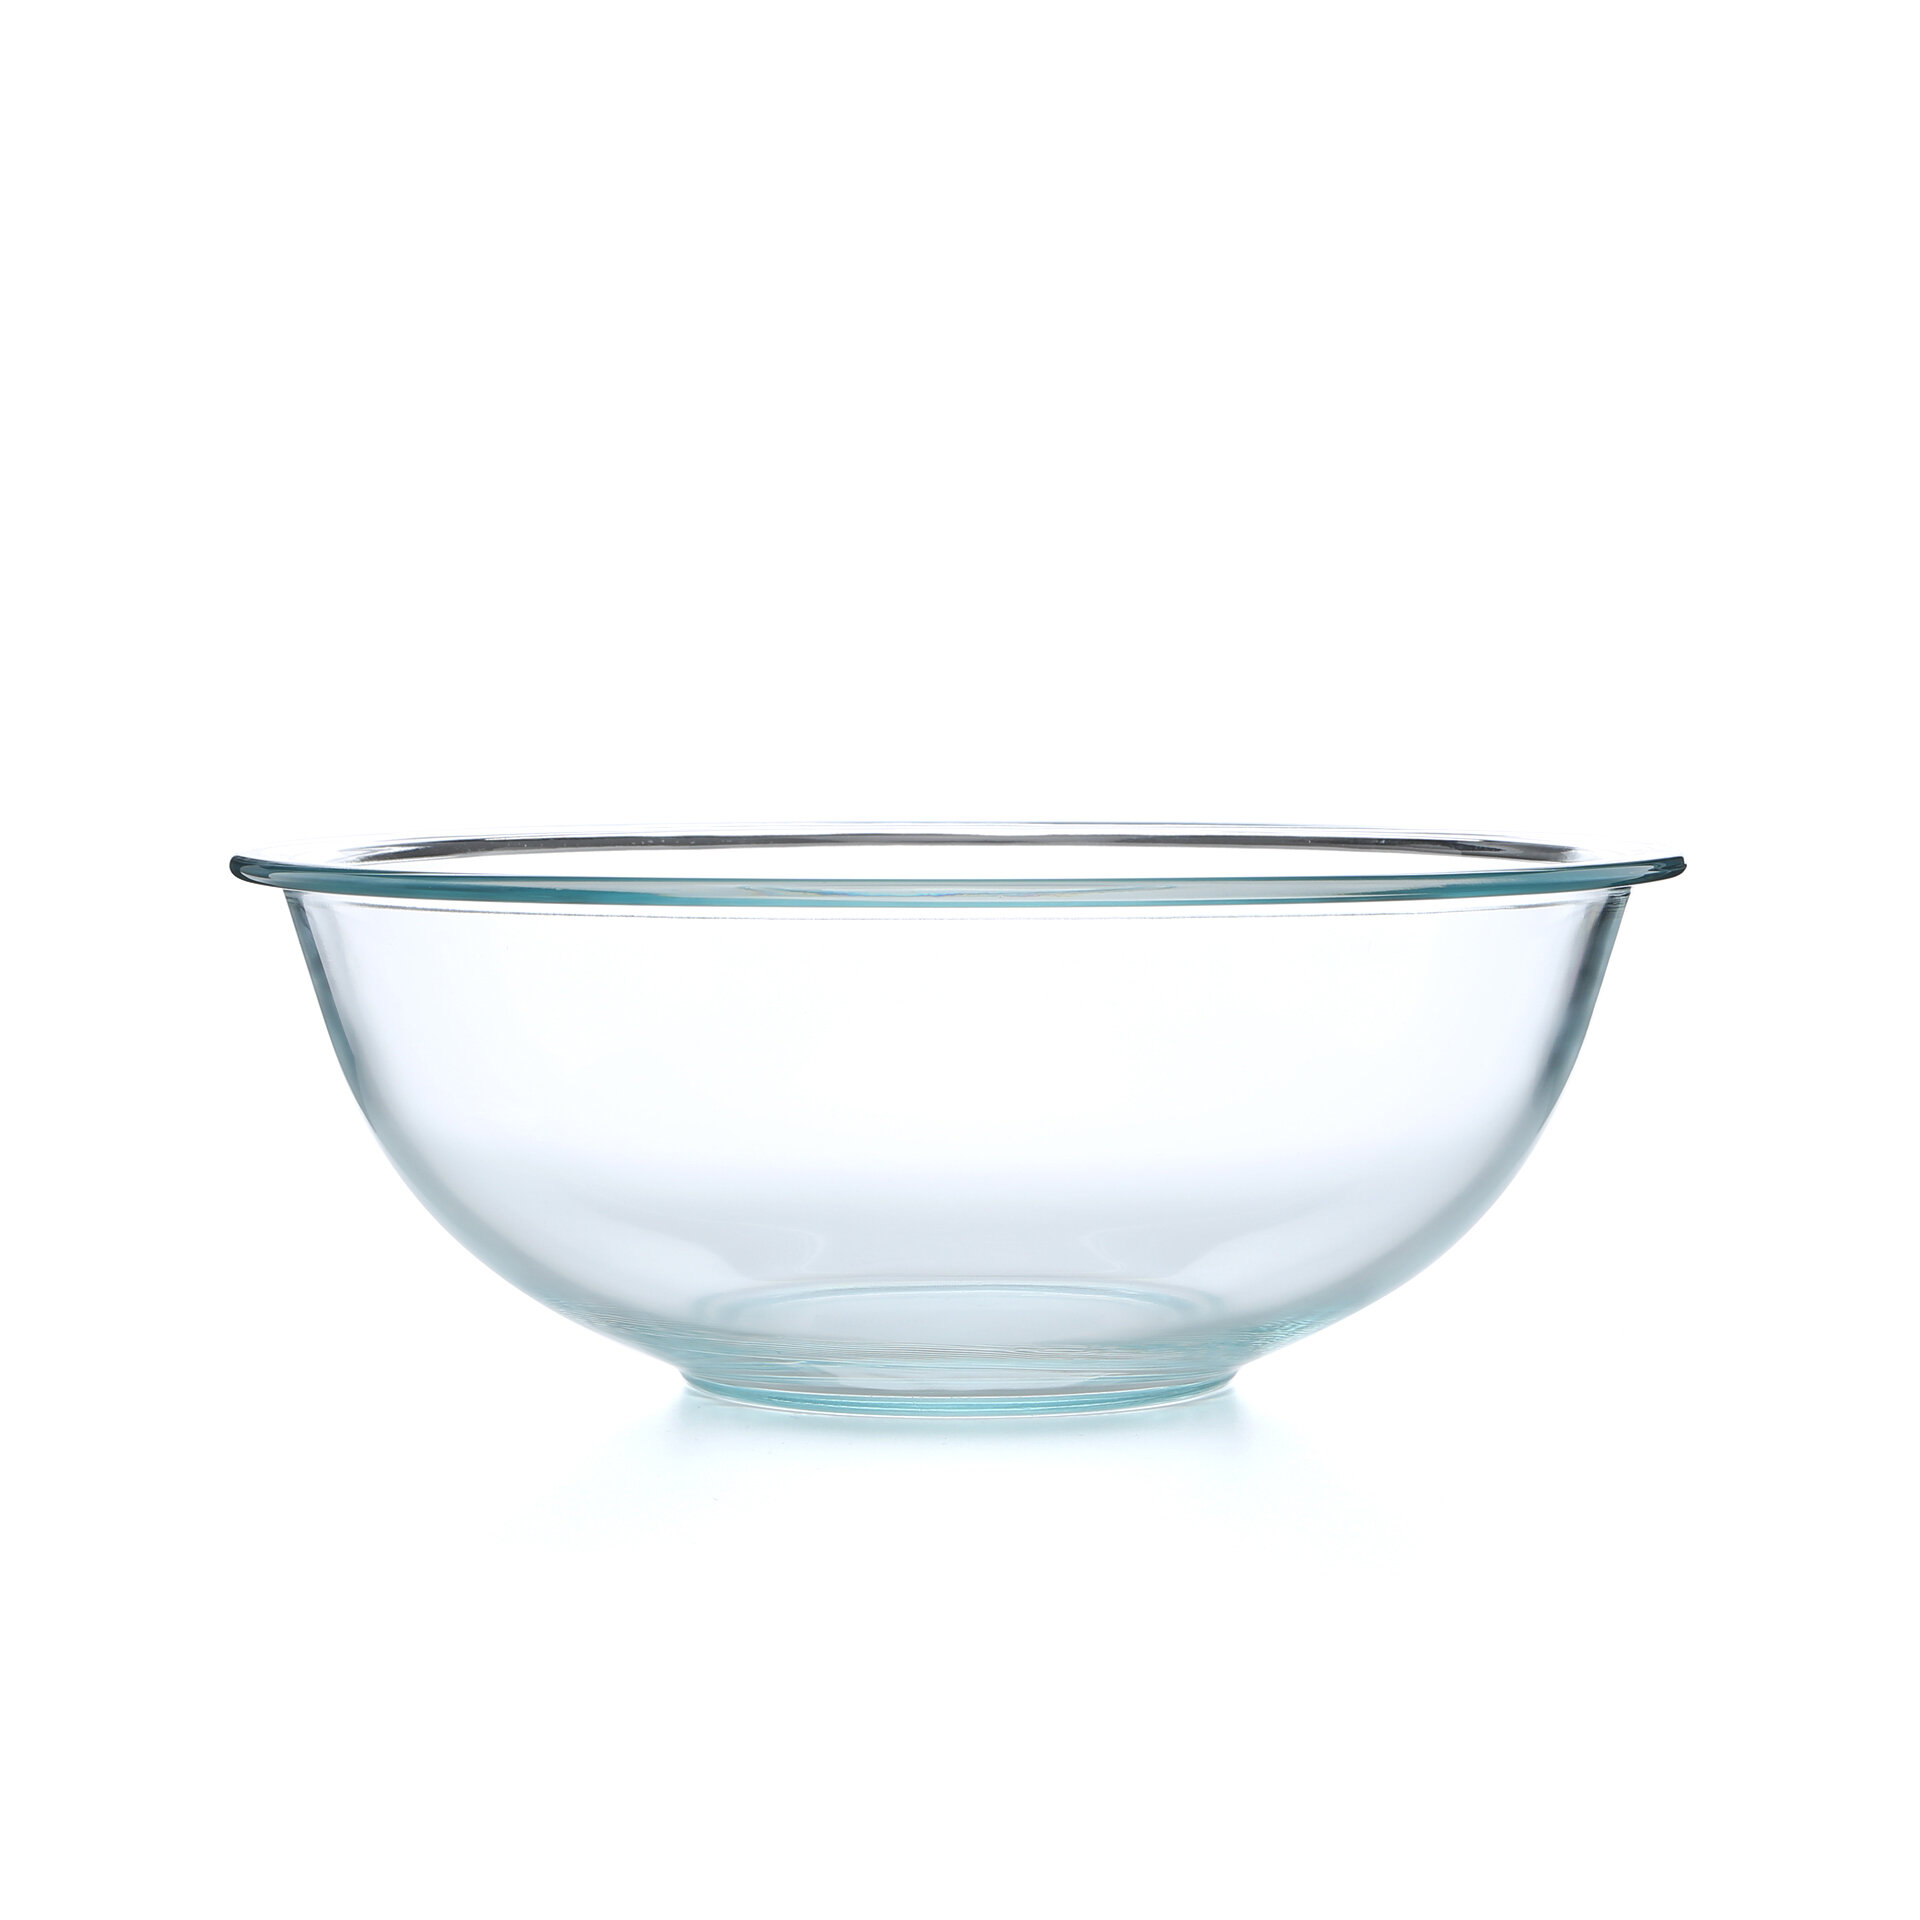 https://assets.wfcdn.com/im/48214442/compr-r85/9018/9018763/pyrex-prepware-glass-mixing-bowl.jpg